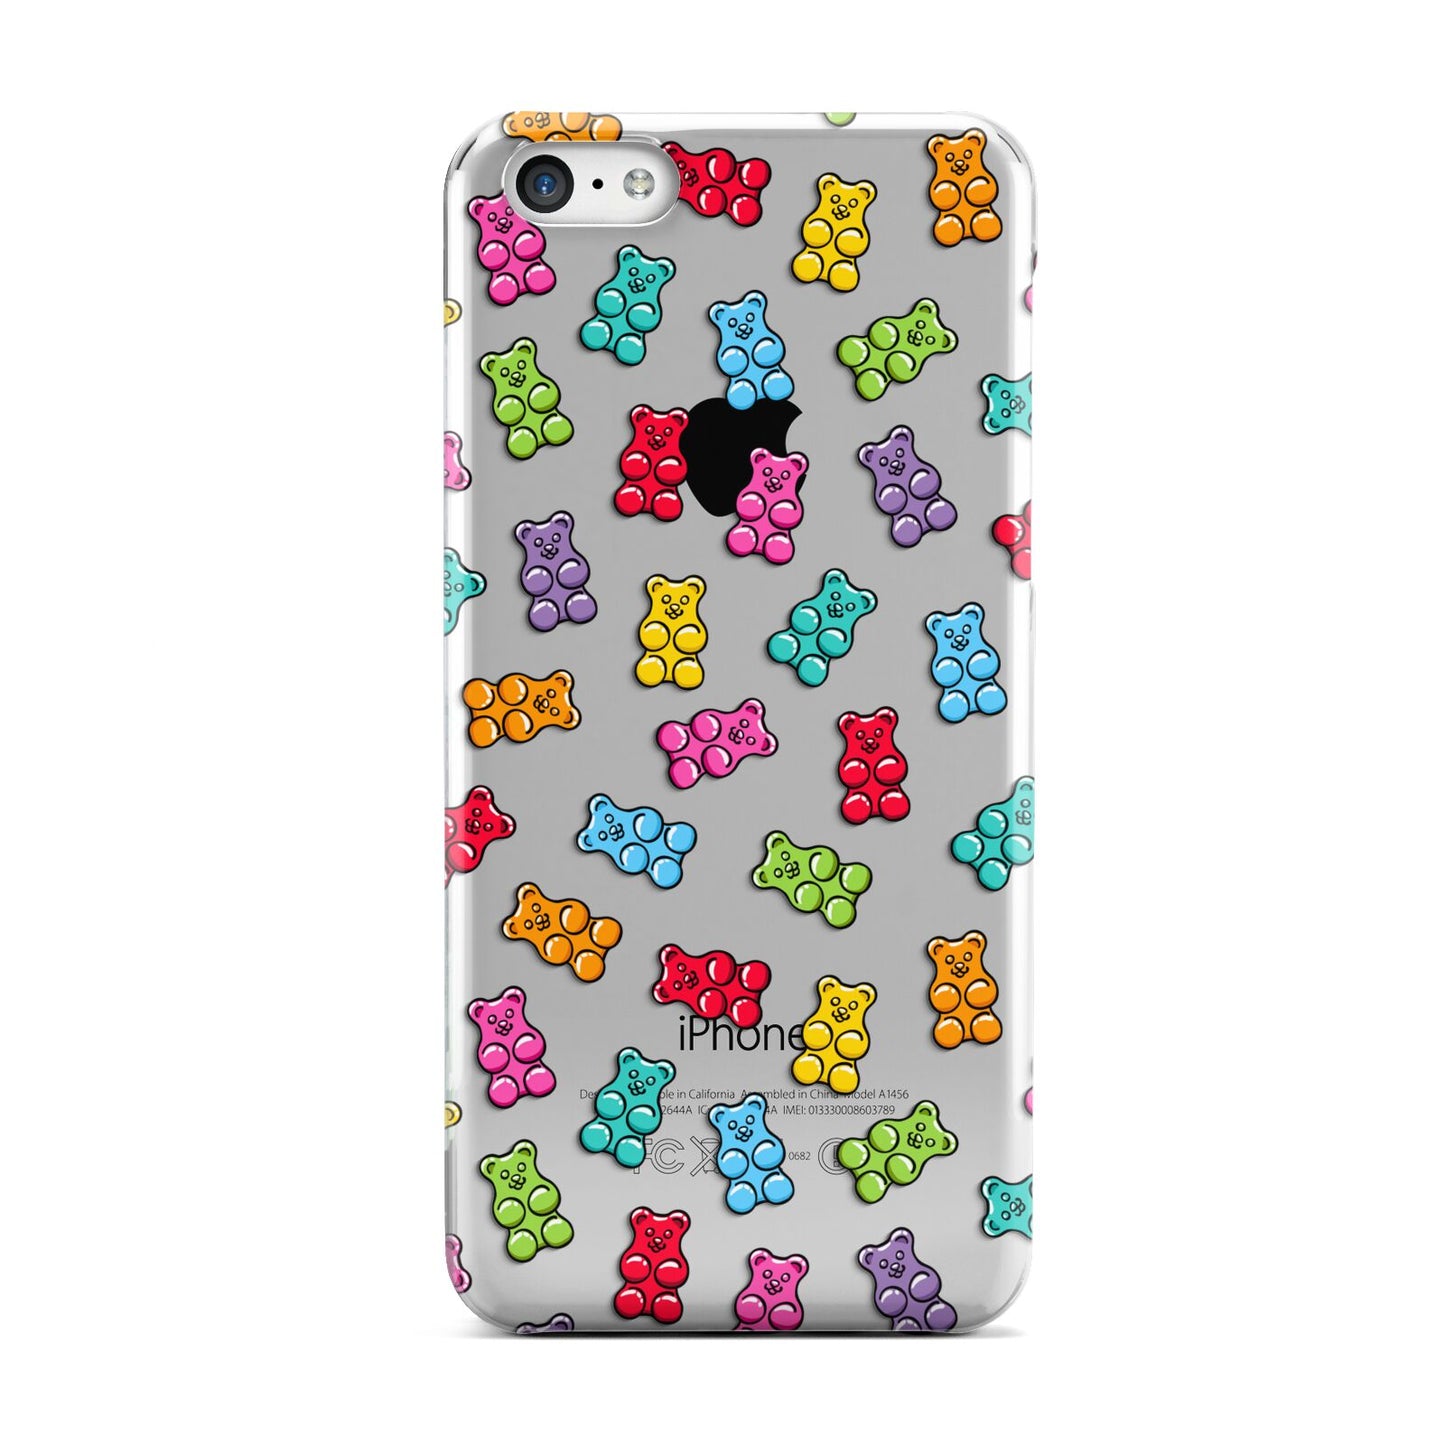 Gummy Bear Apple iPhone 5c Case